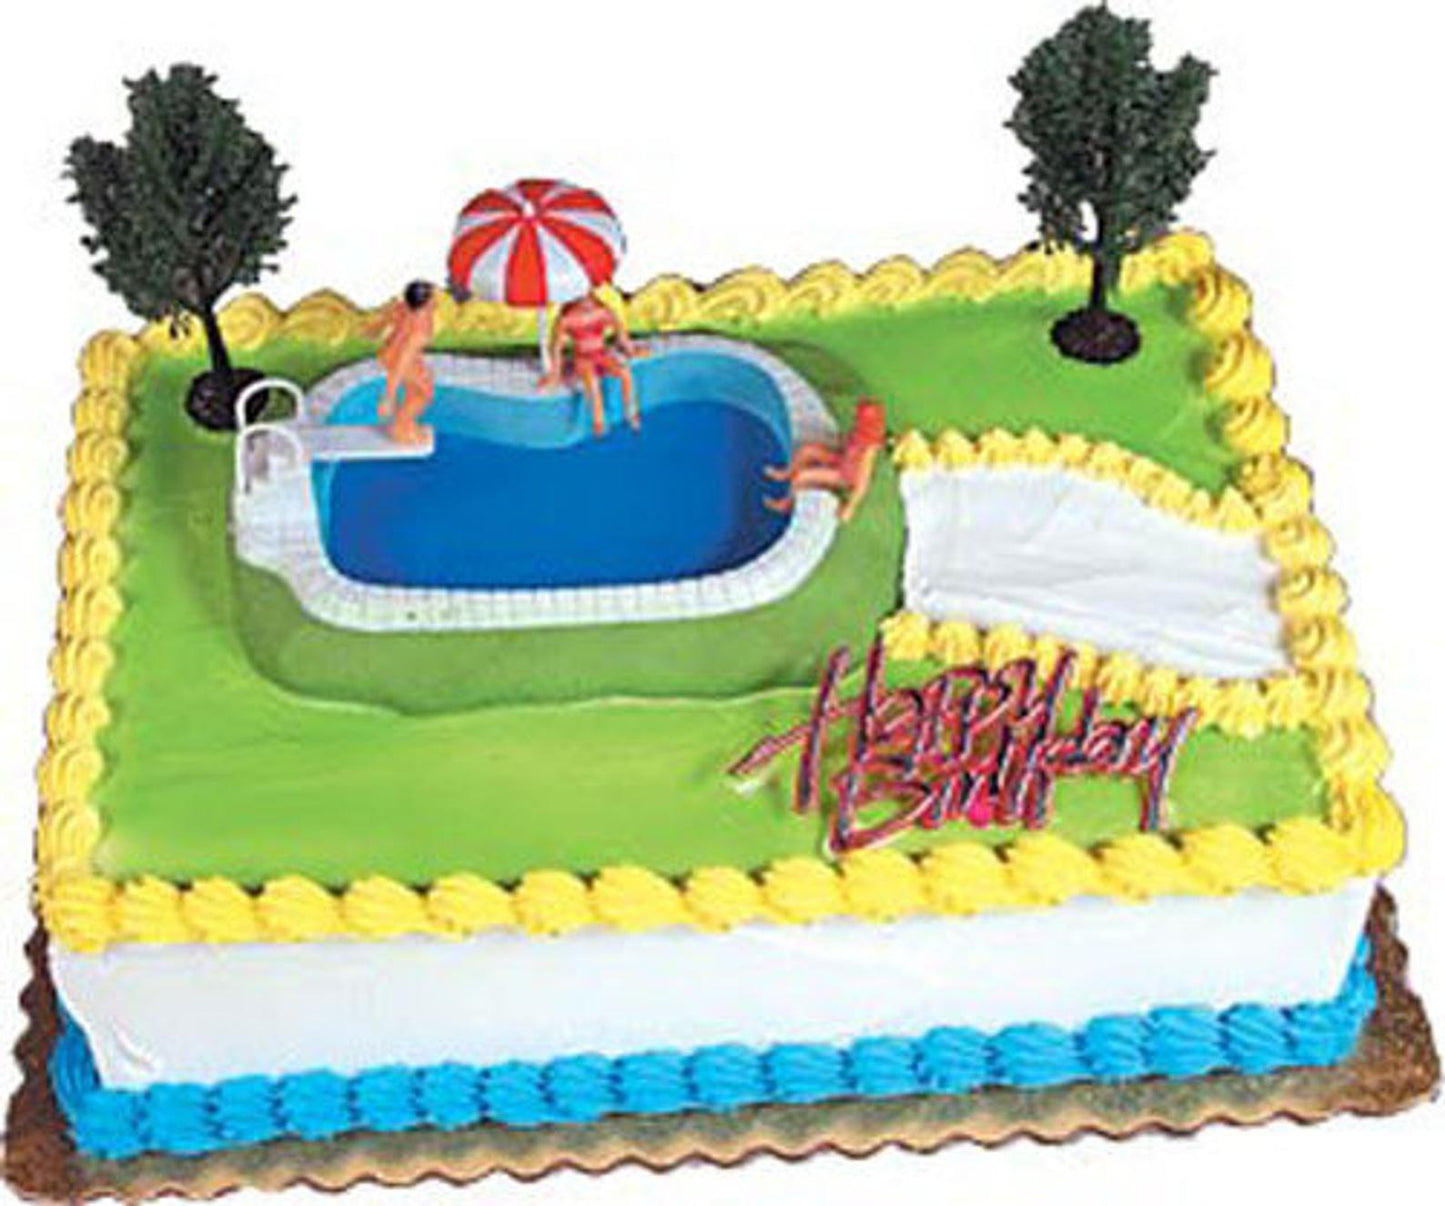 Swimming Pool Cake Decorating Kit